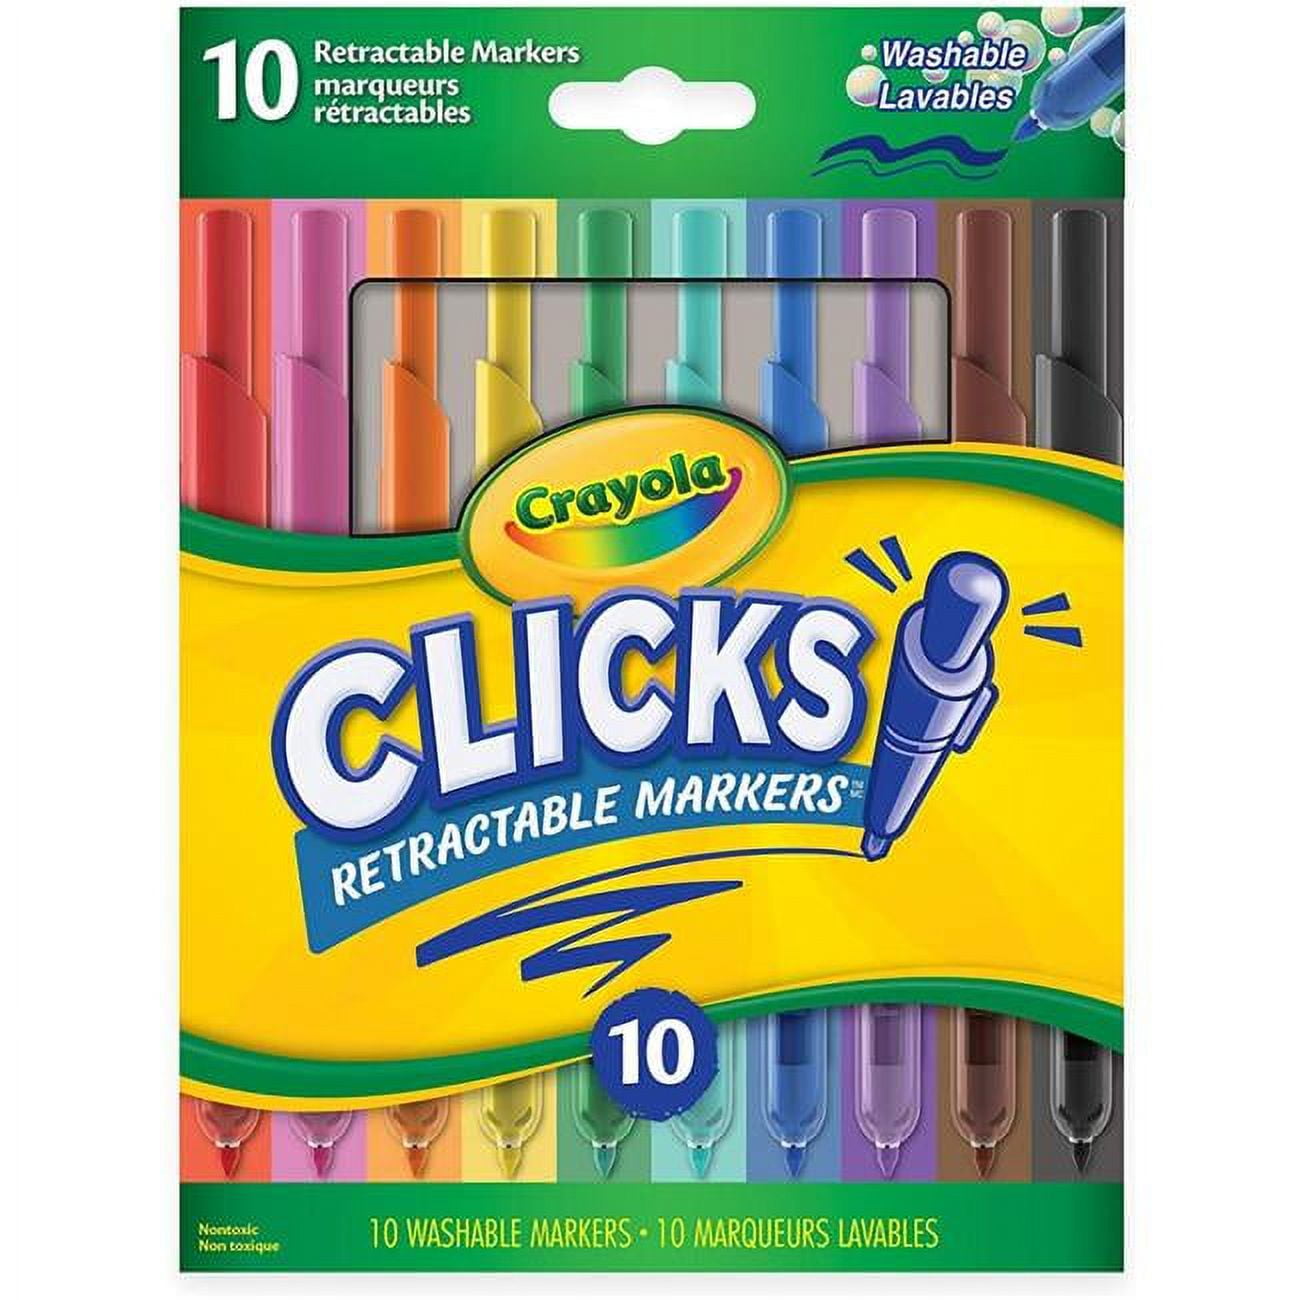 Clickart Retractable Markers – Penny Post, Alexandria VA